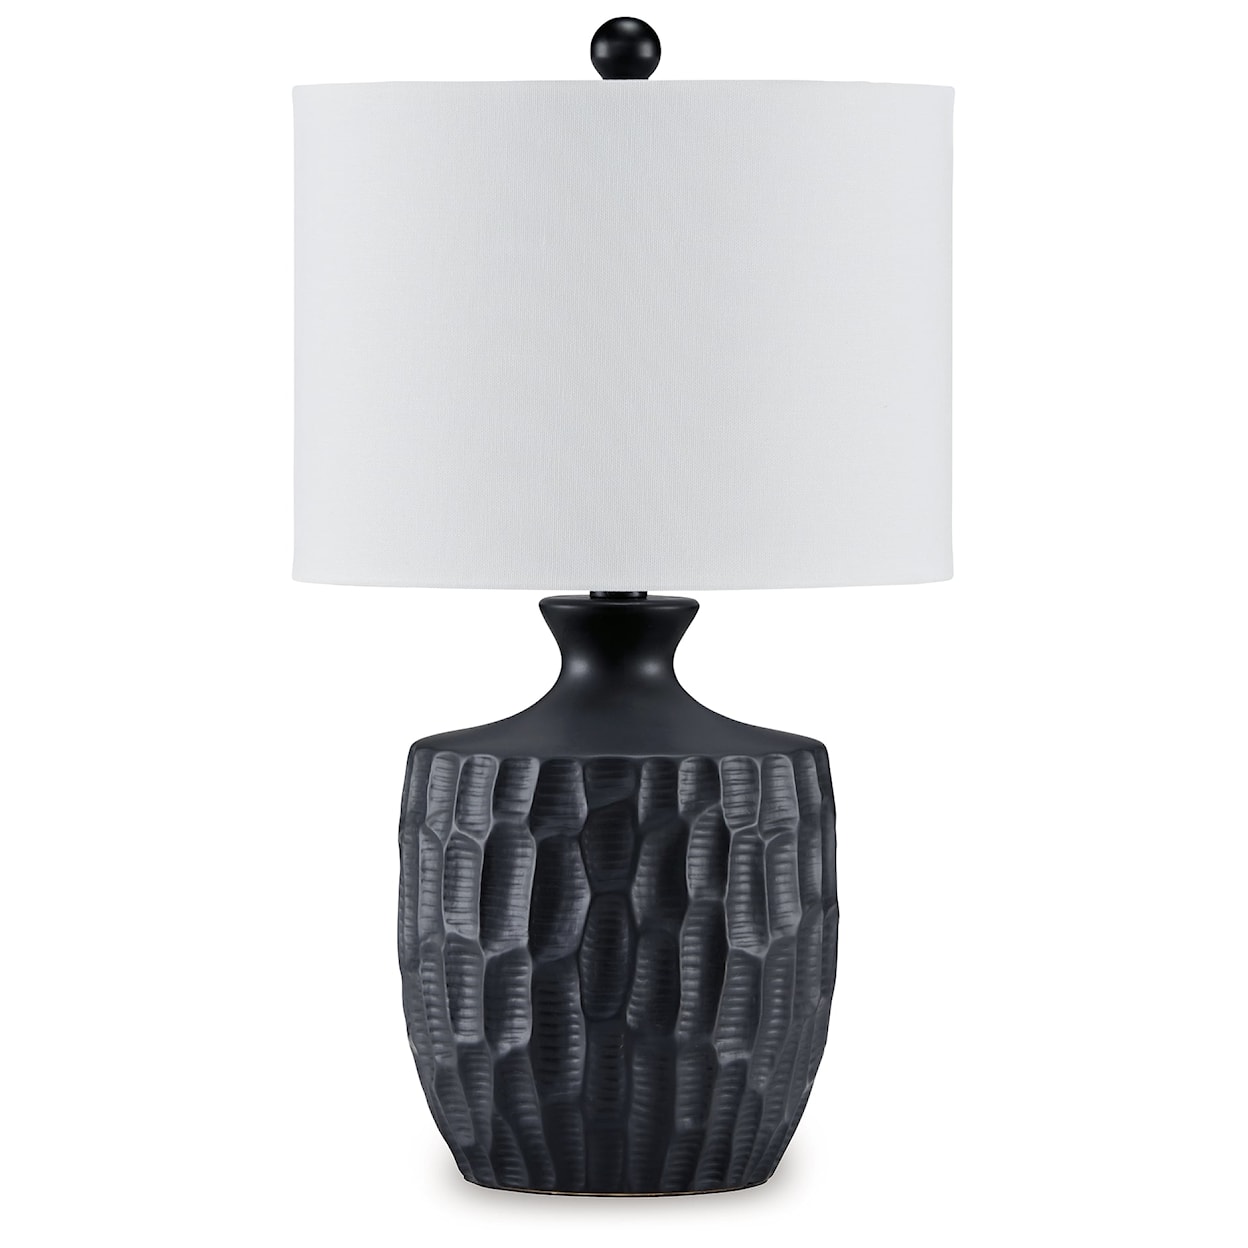 Ashley Furniture Signature Design Ellisley Ceramic Table Lamp